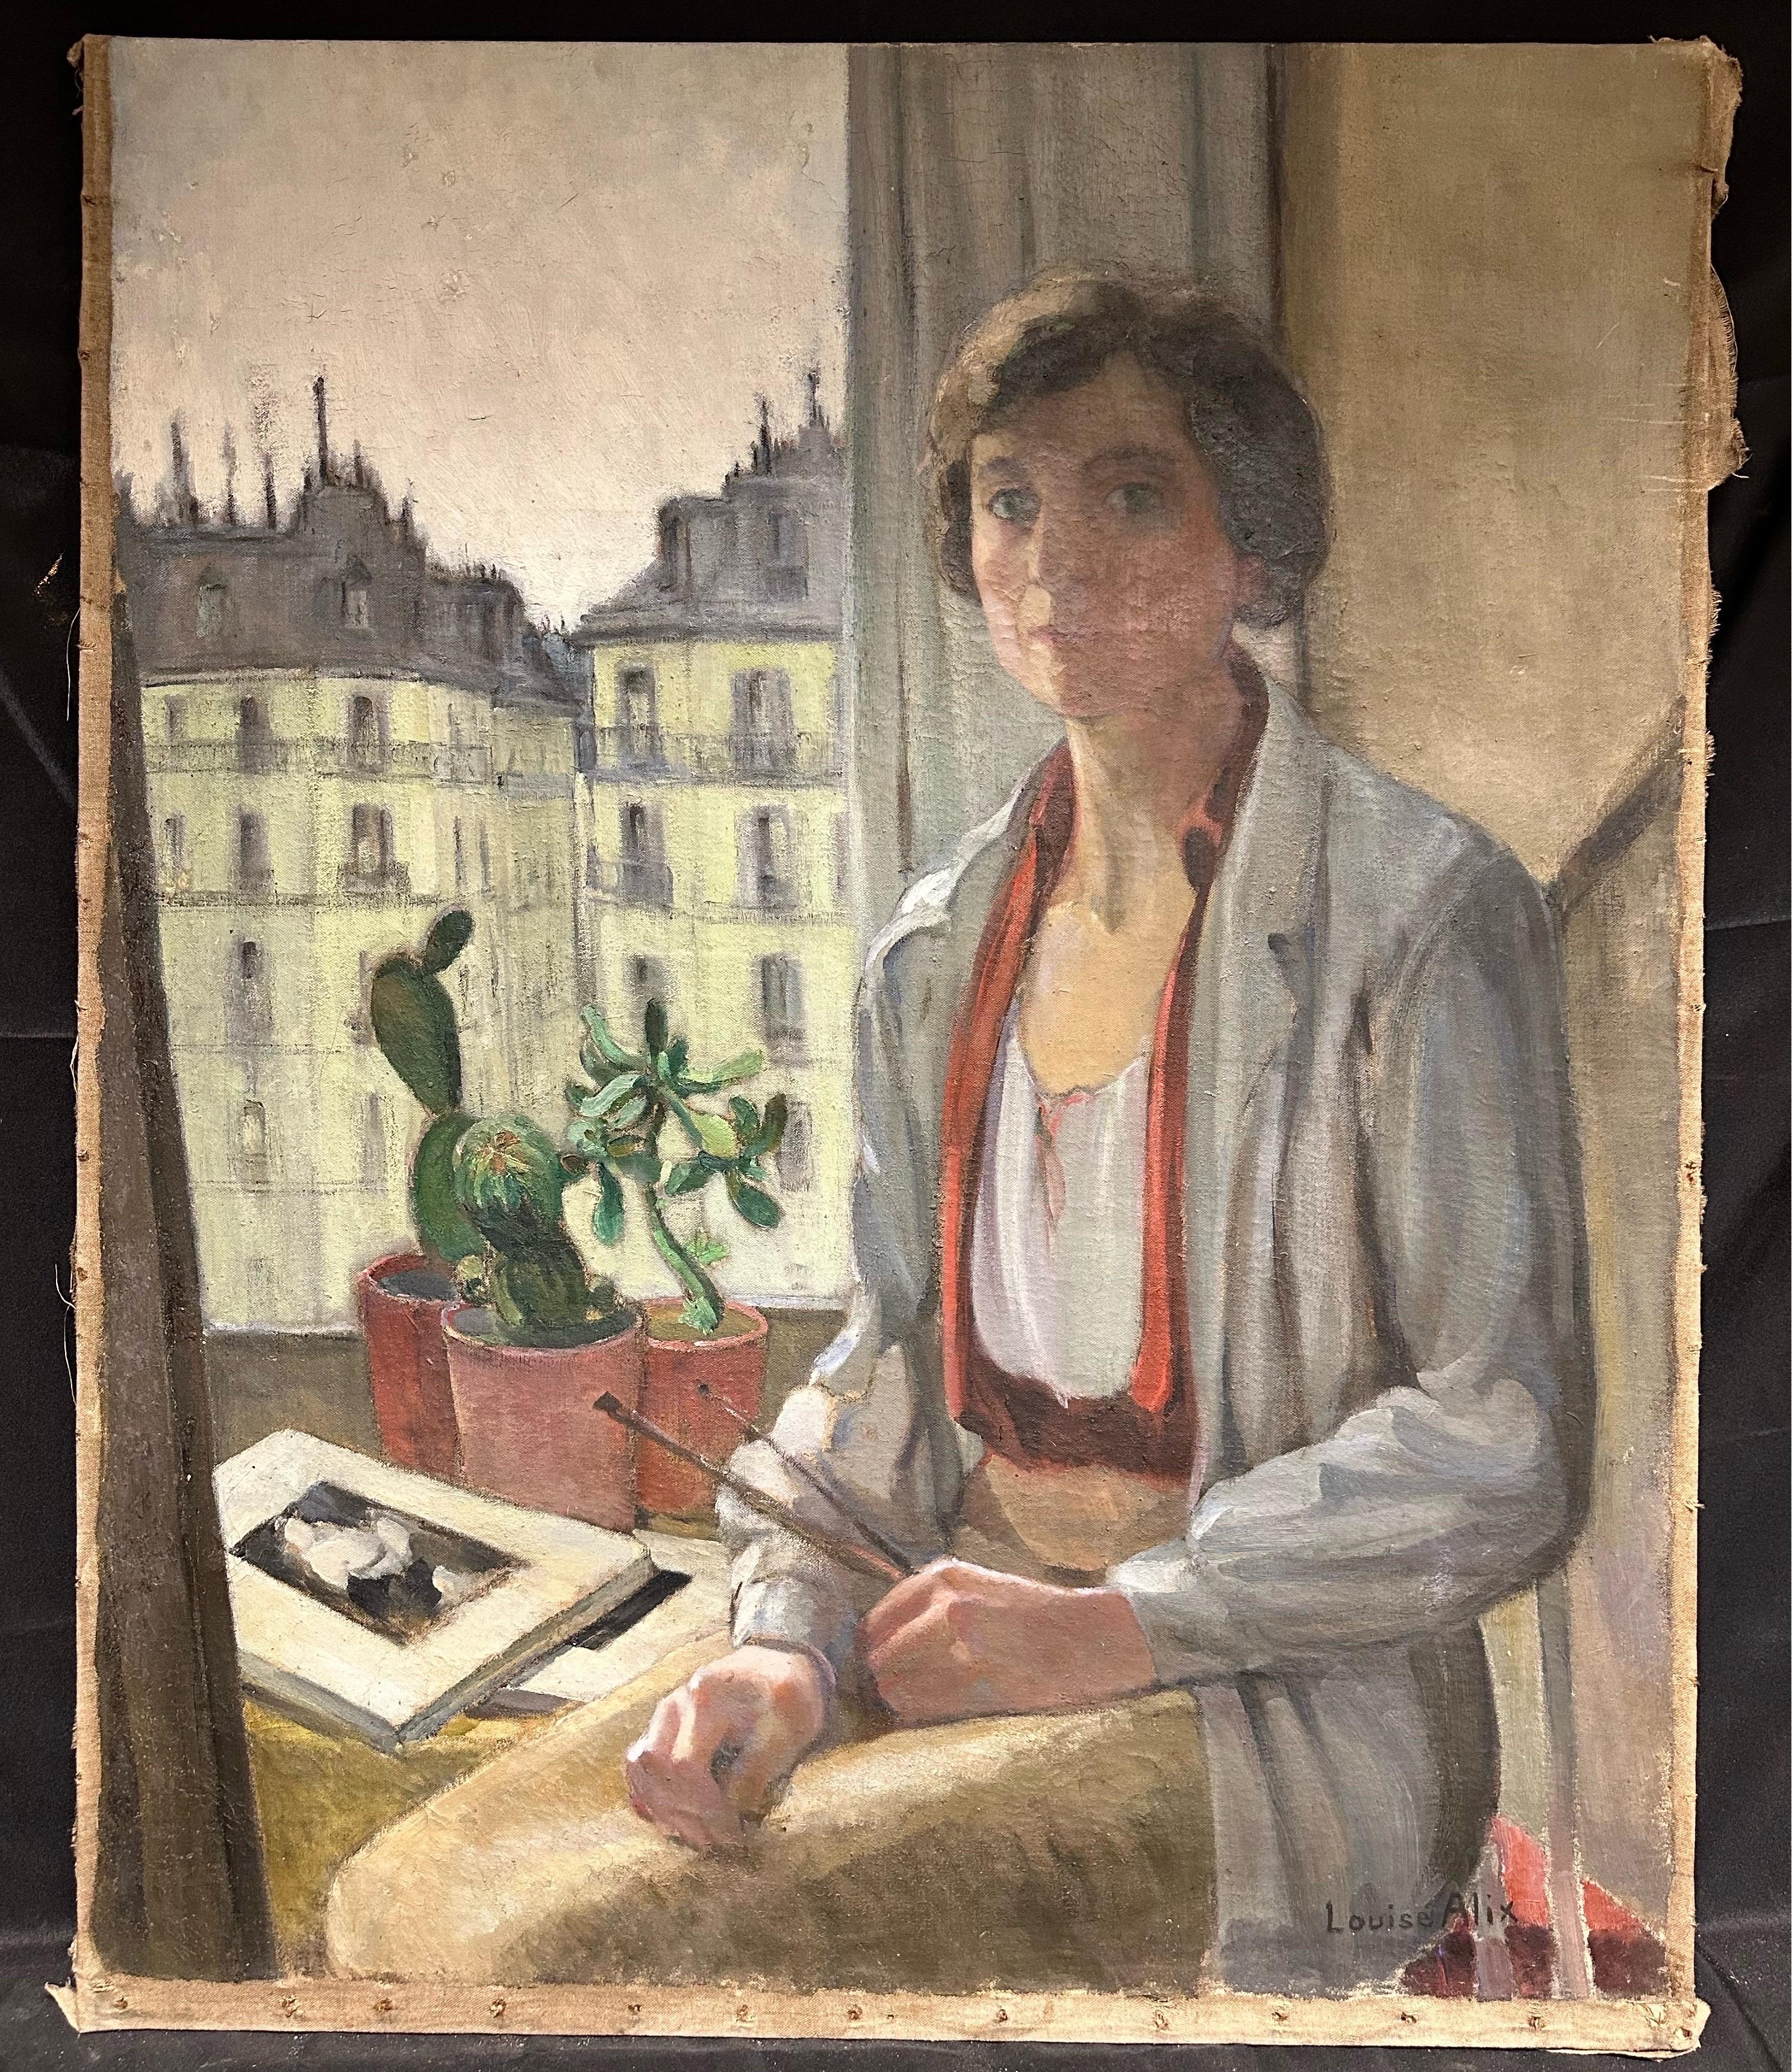 1930er Jahre Französisch Ölgemälde Self-Portrait des Künstlers Paris Rooftops Studio View – Painting von Louise Alix